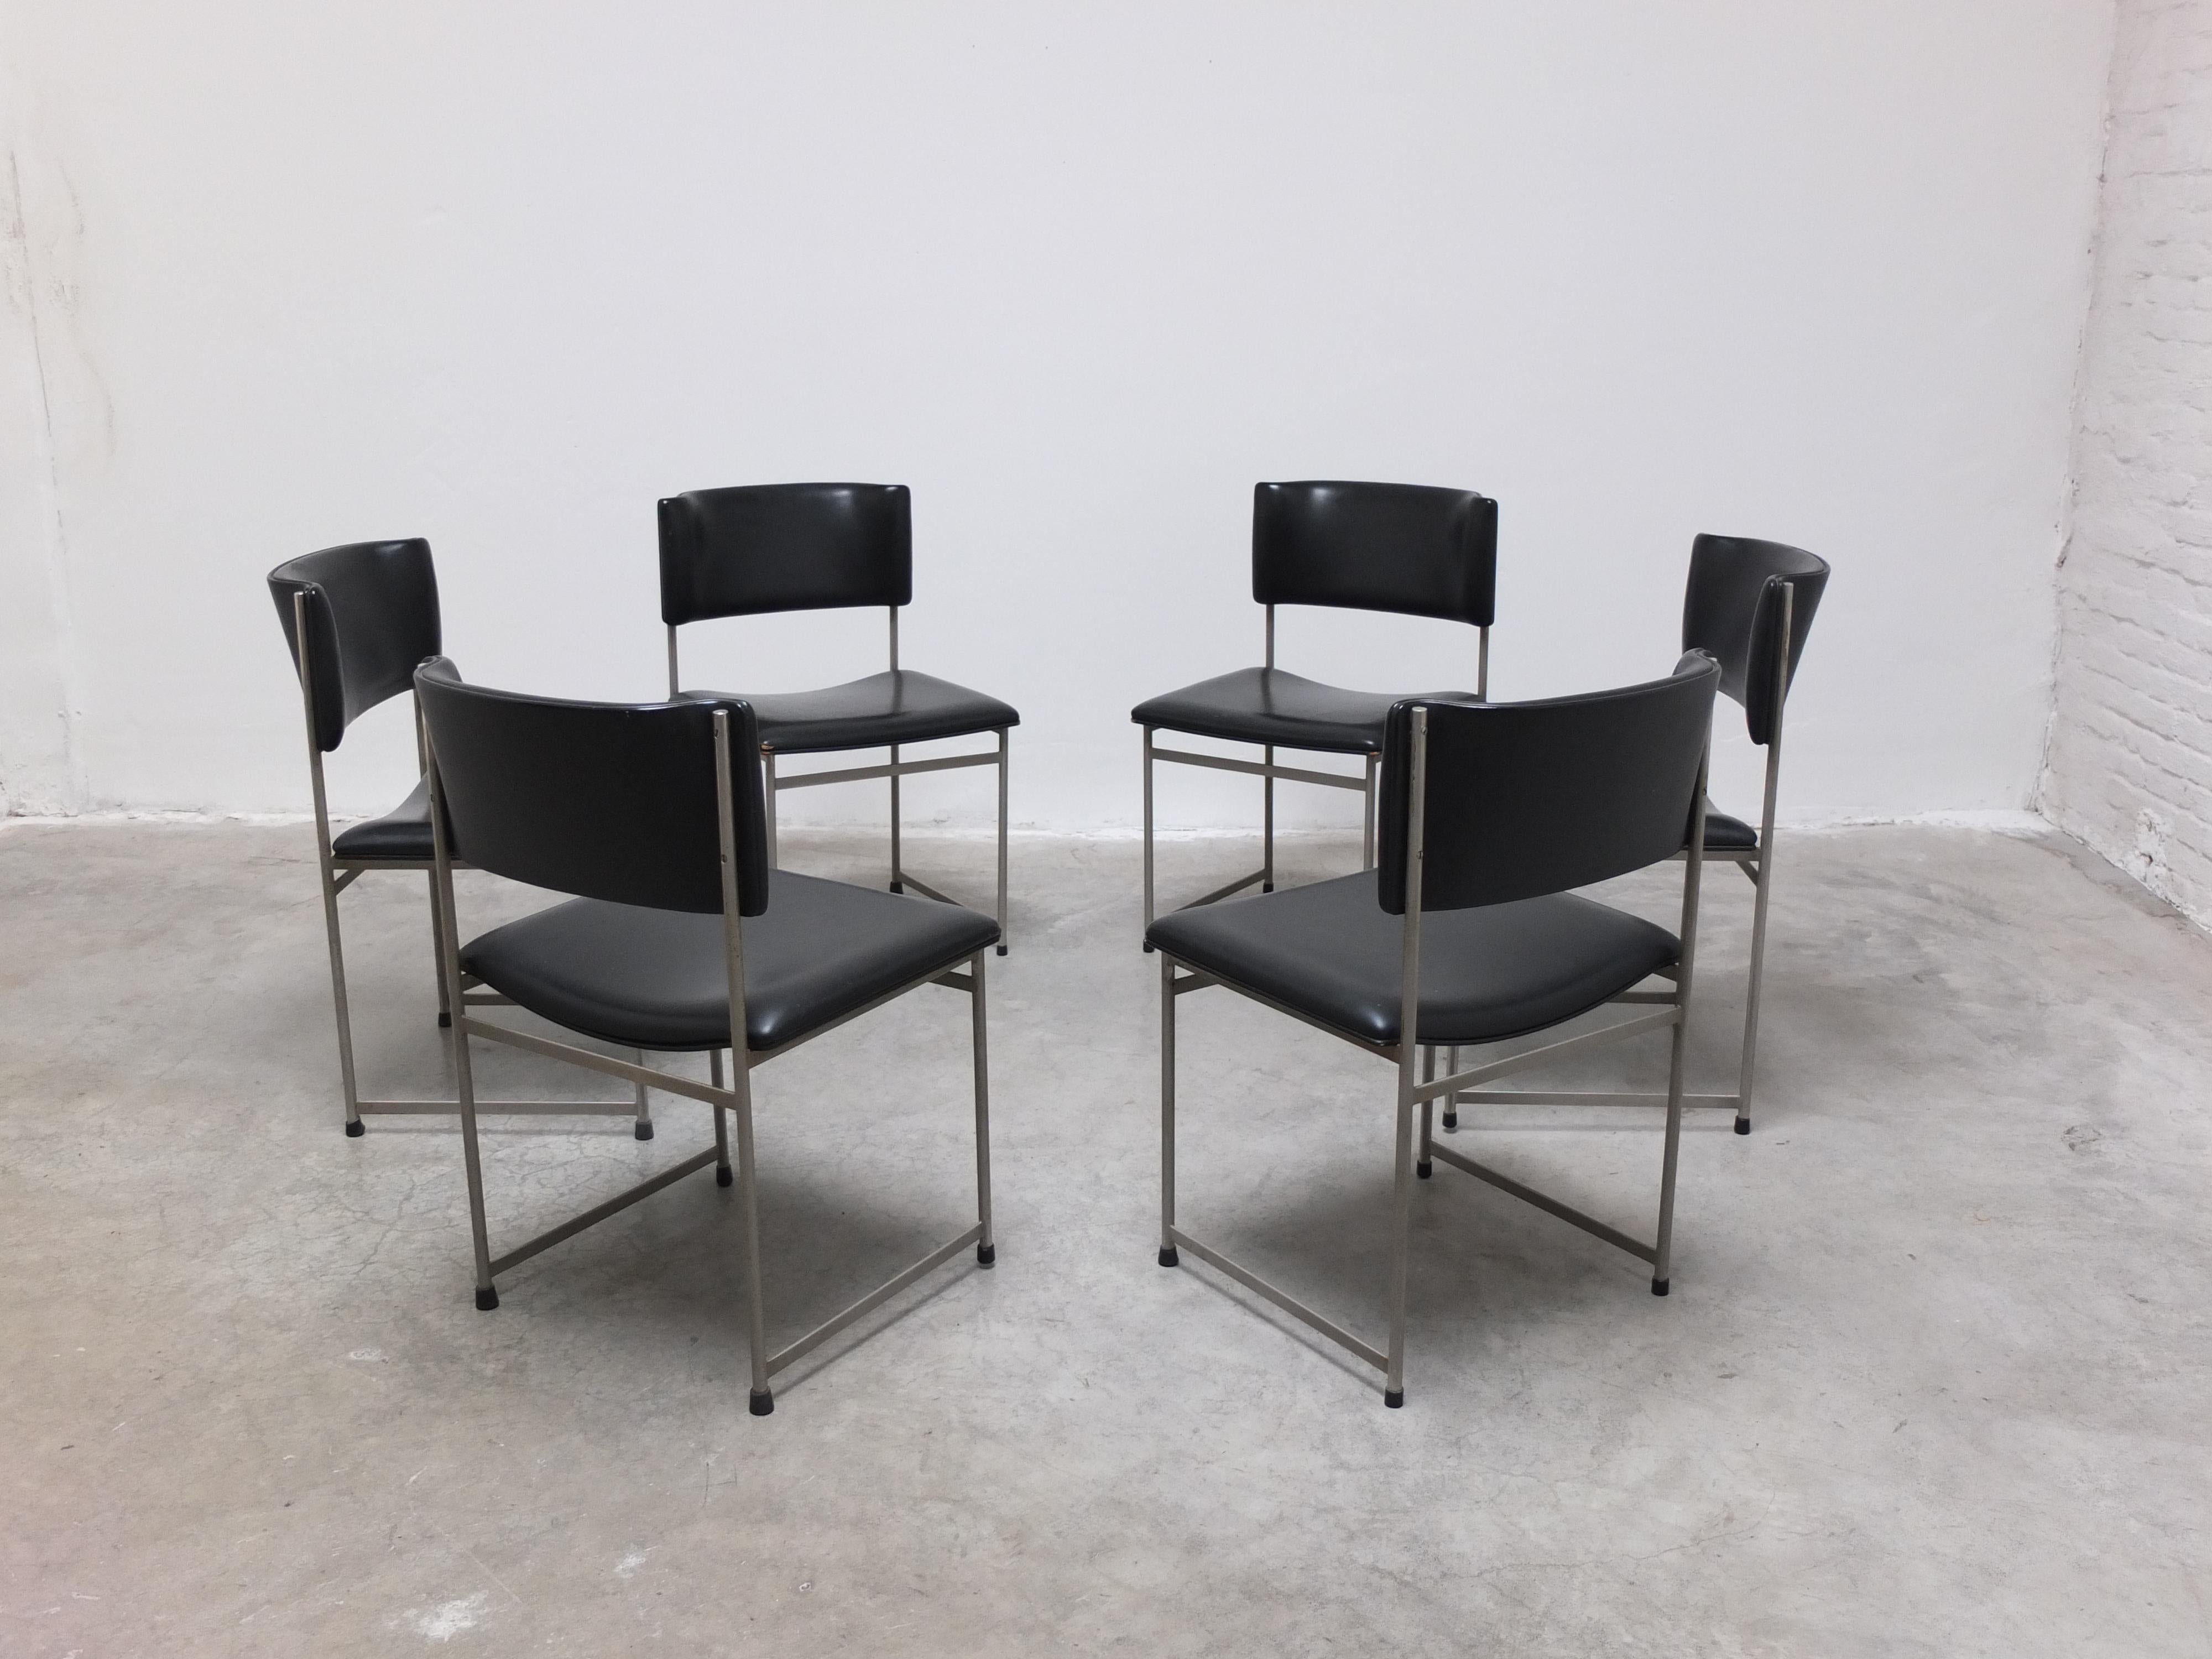 Superbe ensemble de 6 chaises de salle à manger 'SM08' conçues par Cees Braakman pour Pastoe dans les années 1960. Un magnifique design minimaliste qui présente un cadre métallique épuré associé au revêtement original en similicuir noir. Ces chaises